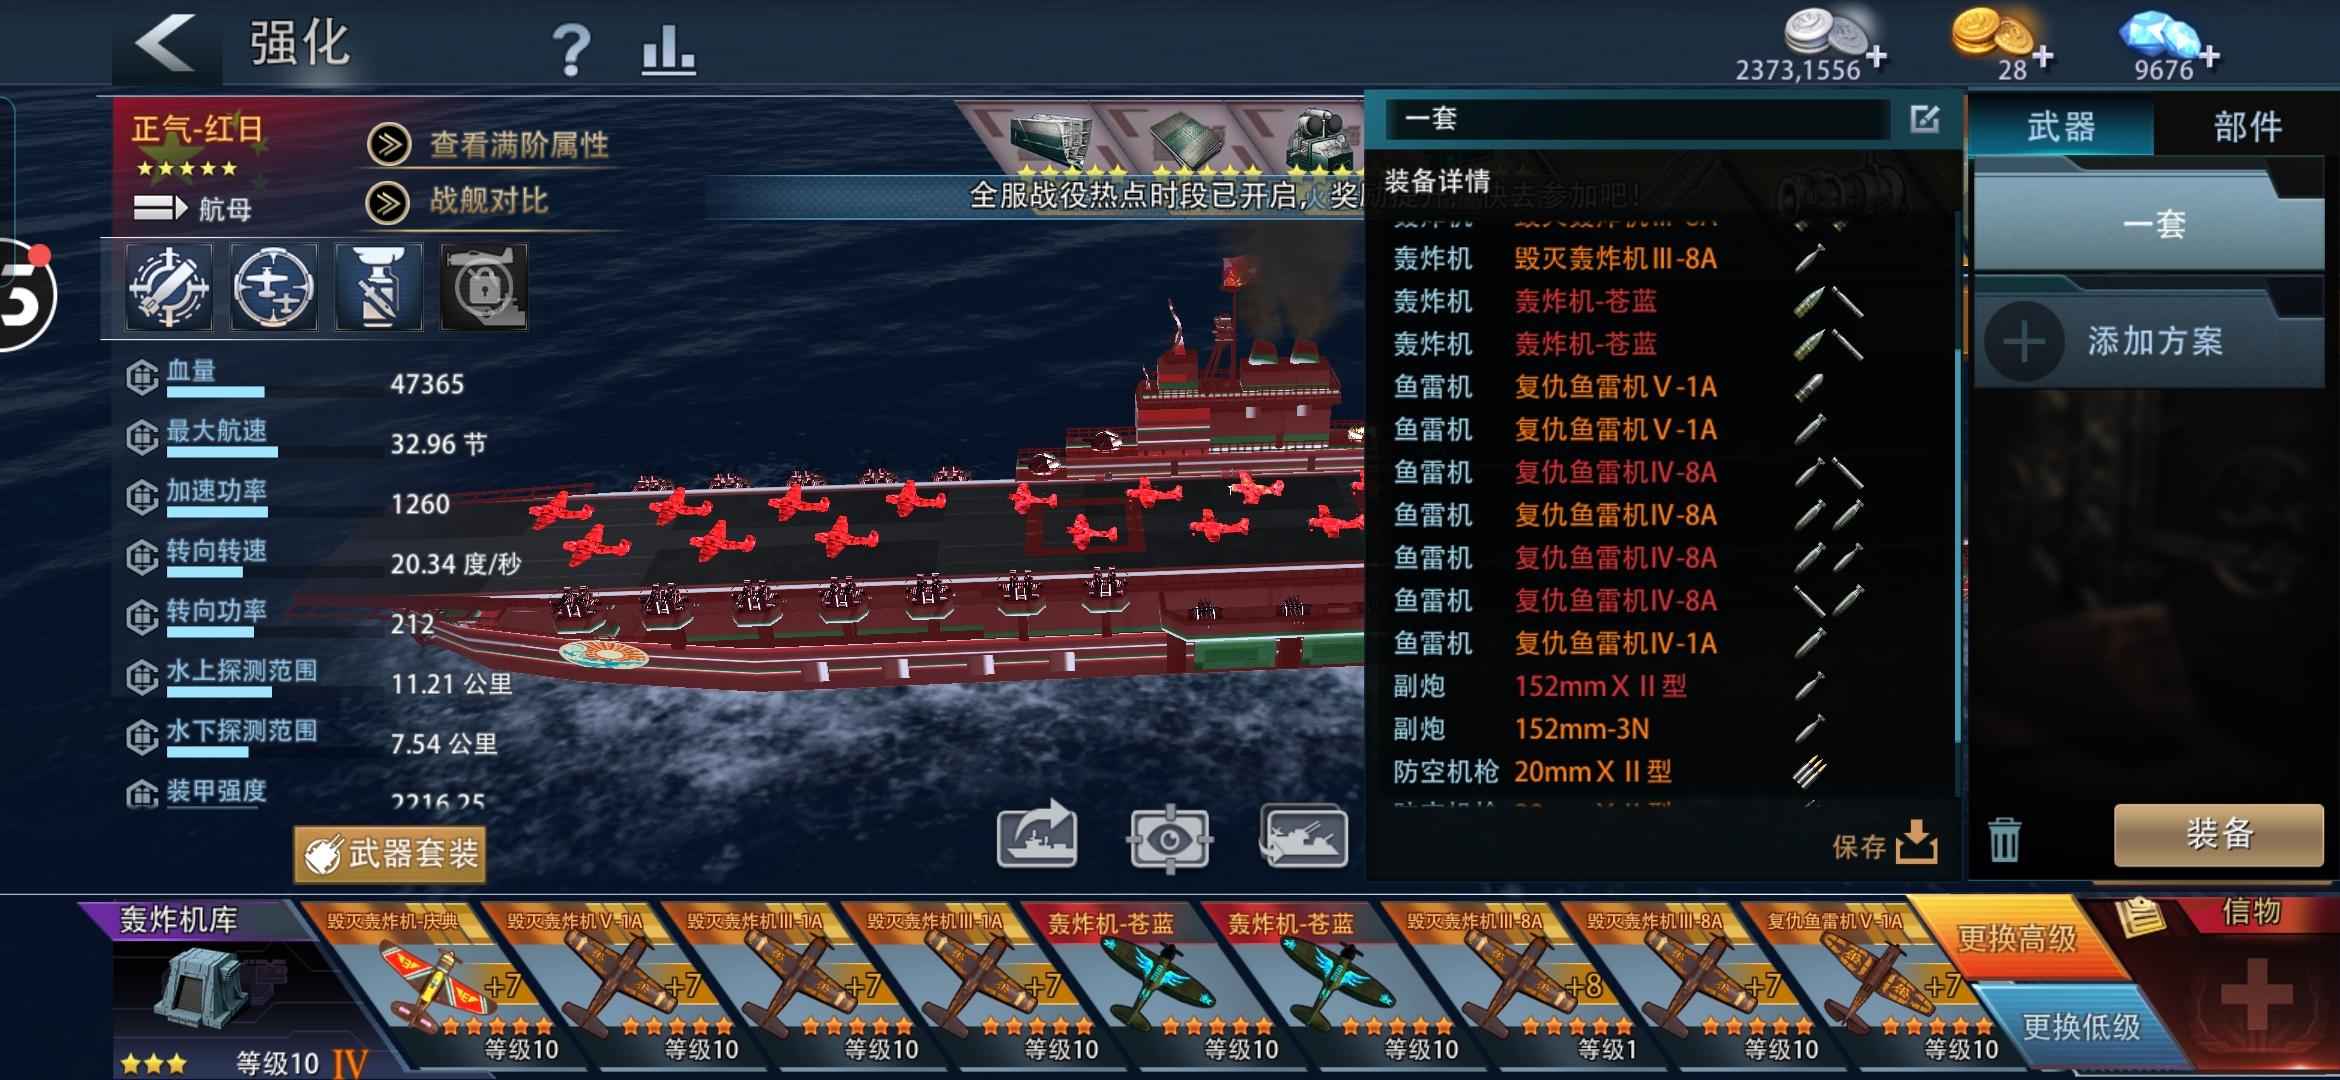 巅峰战舰【15星级8】11.6W正气1.7W塞班主航